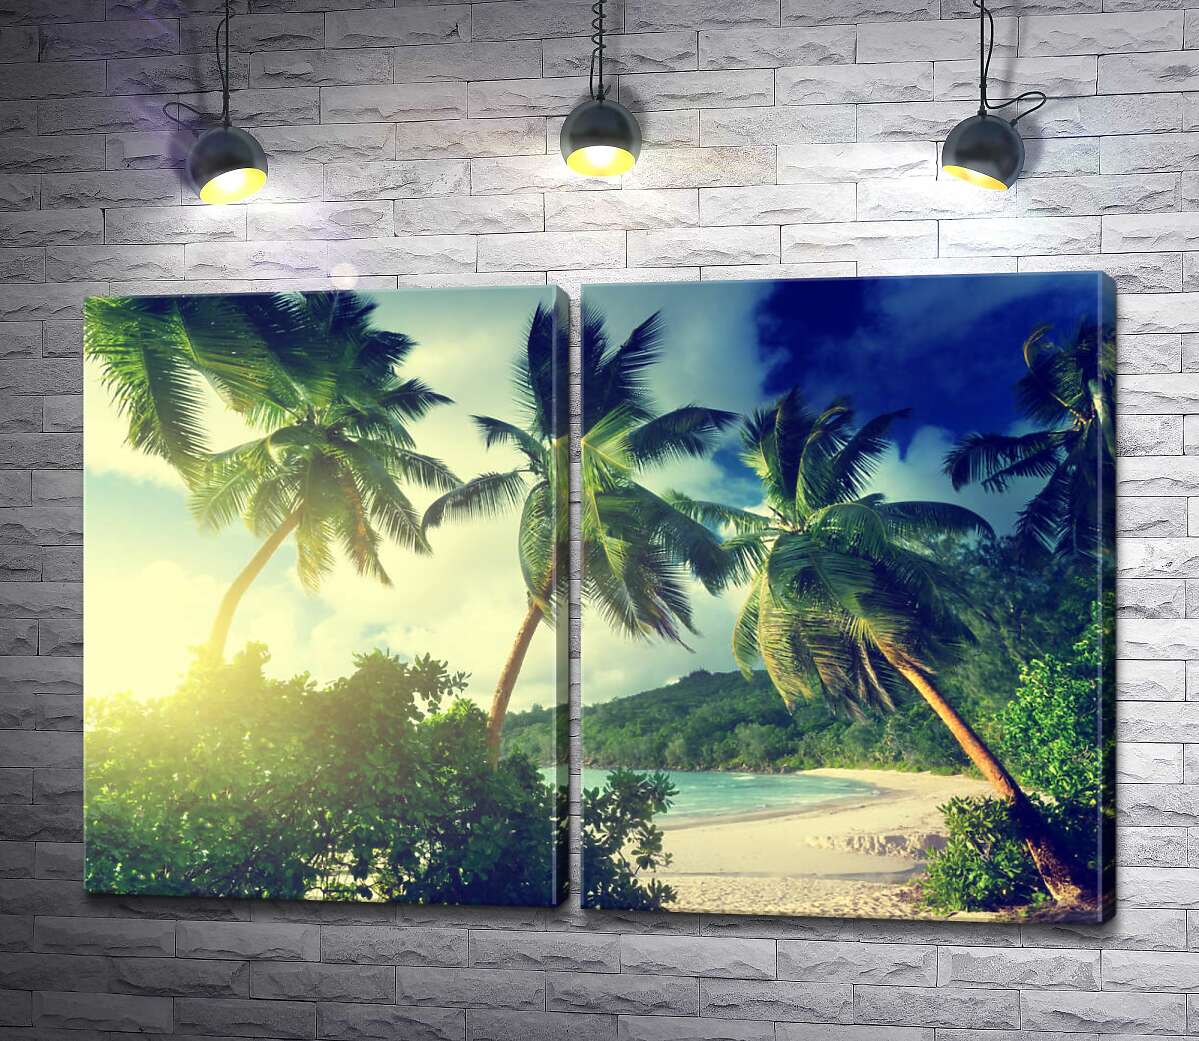 модульная картина Солнечный пляж скрылся за зелеными кустами и пальмами